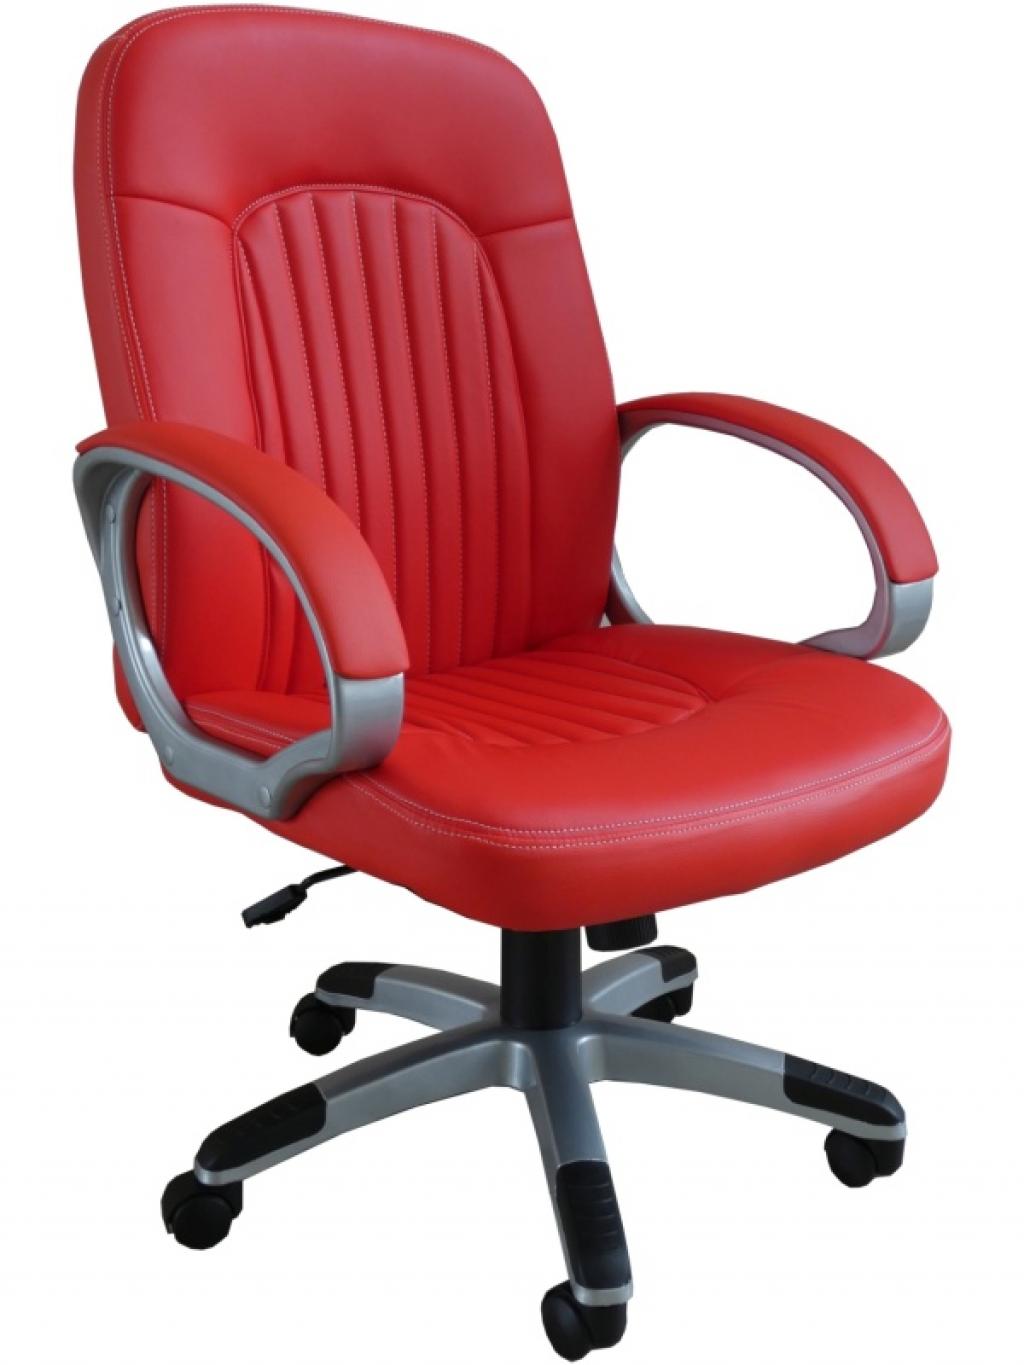 Sanford irodai forgószék - vezetői szék (A)